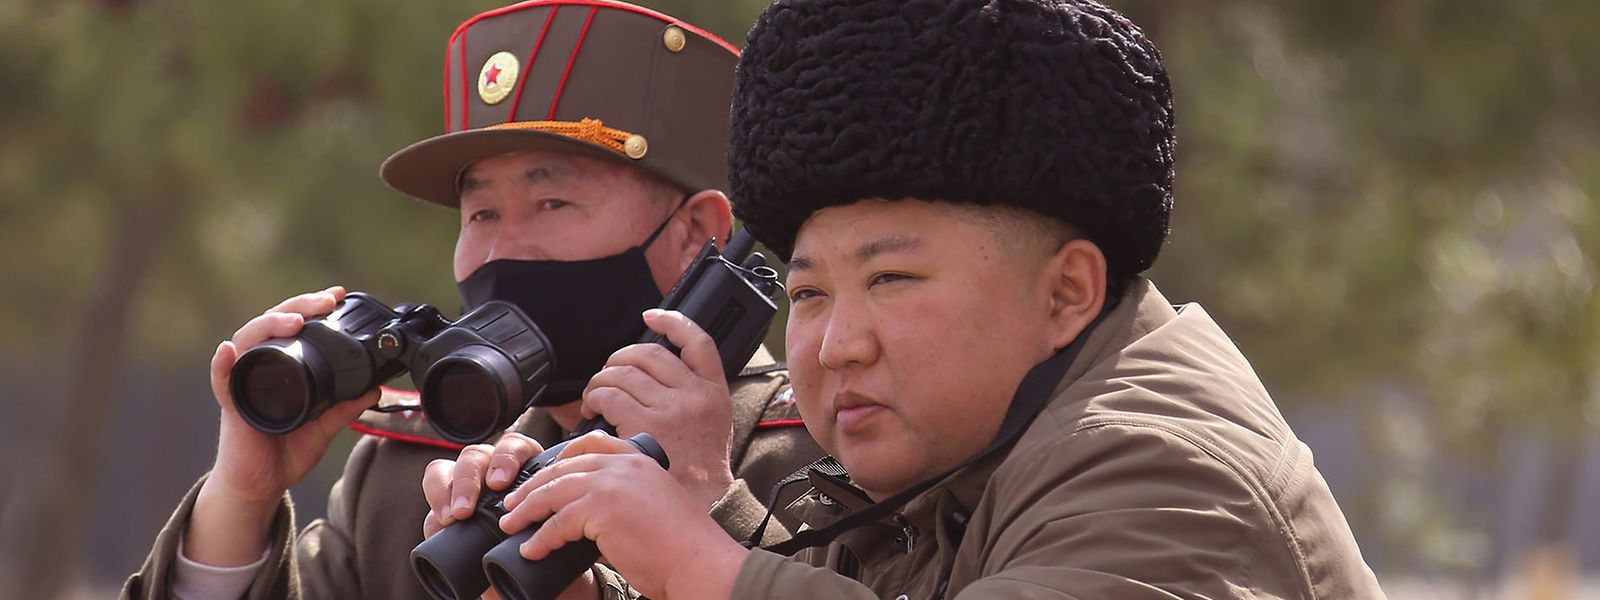 Nordkoreas Machthaber Kim Jong Un (r.) ist "oben ohne": Er trägt keinen Atemschutz trotz der Corona-Krise.